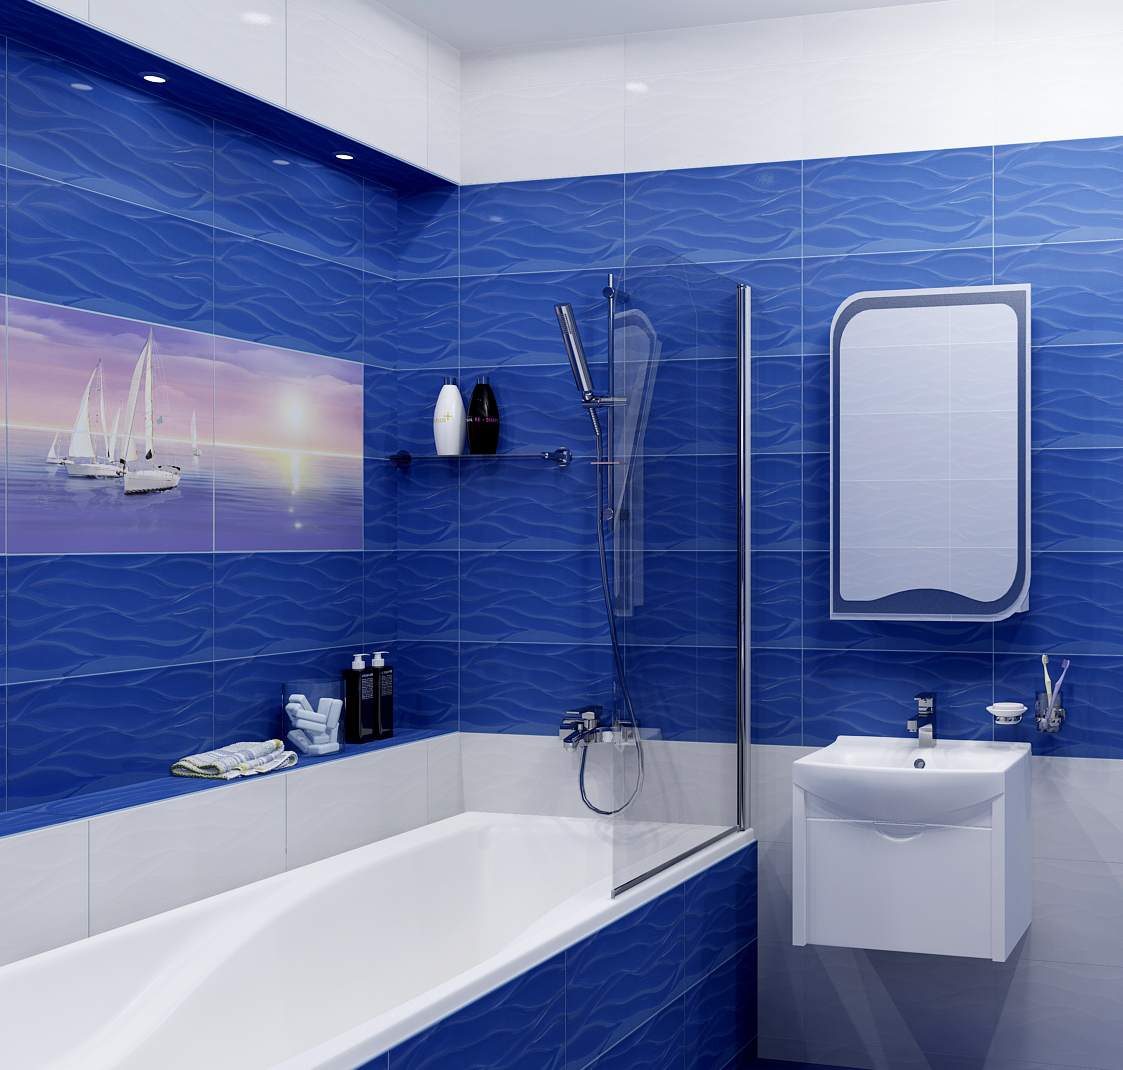 панели в ванной комнате дизайн